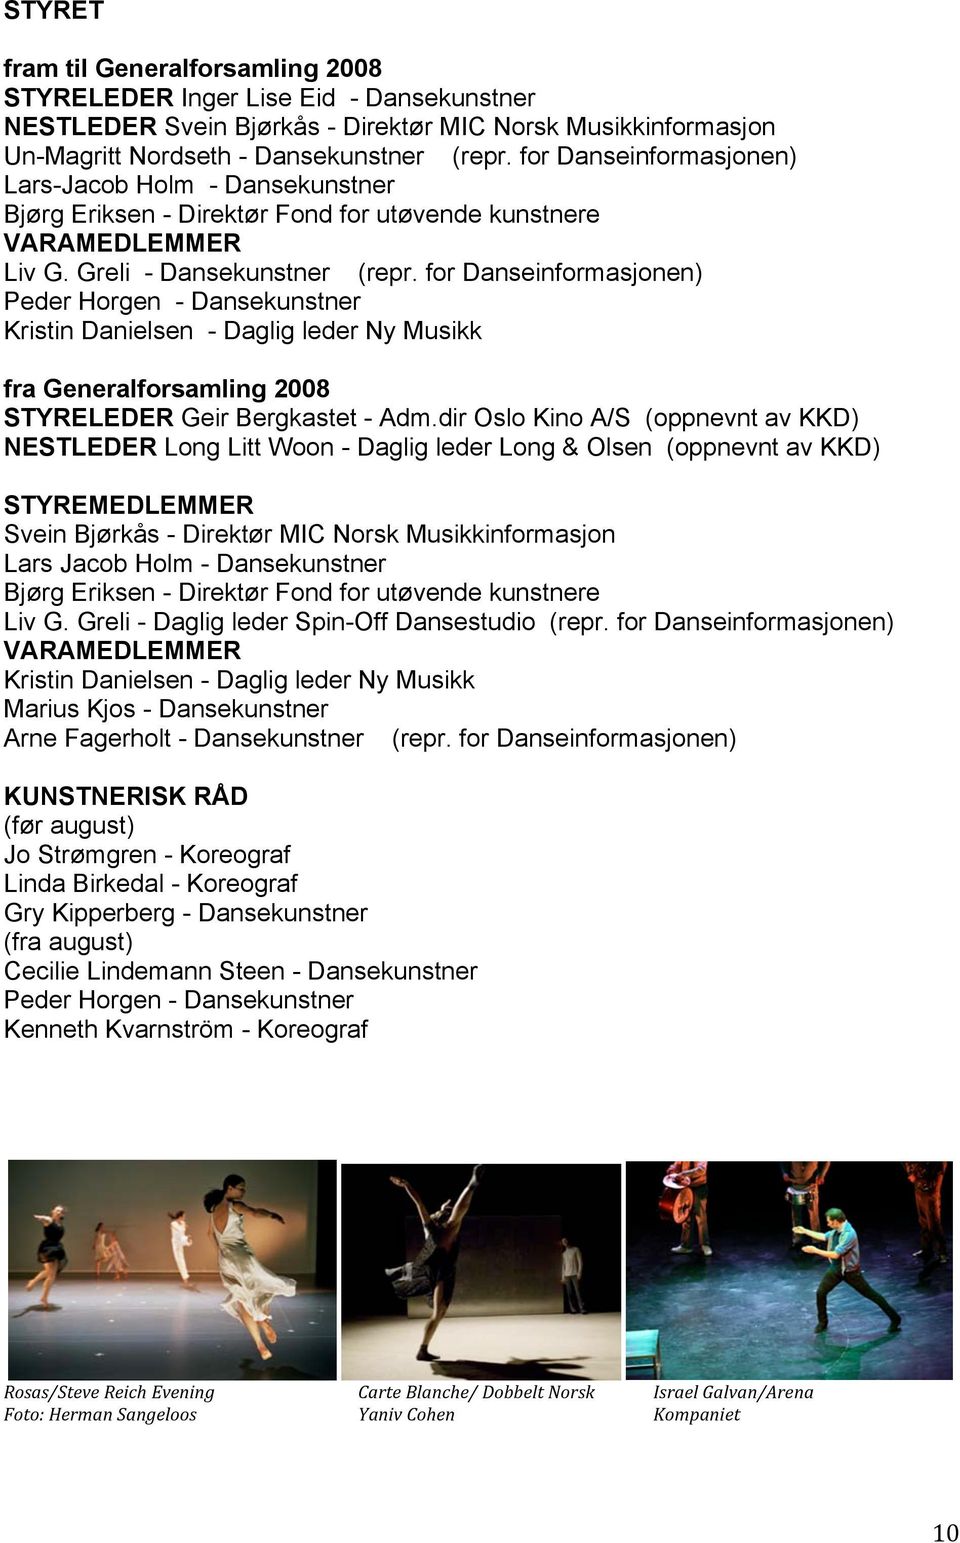 for Danseinformasjonen) Peder Horgen - Dansekunstner Kristin Danielsen - Daglig leder Ny Musikk fra Generalforsamling 2008 STYRELEDER Geir Bergkastet - Adm.